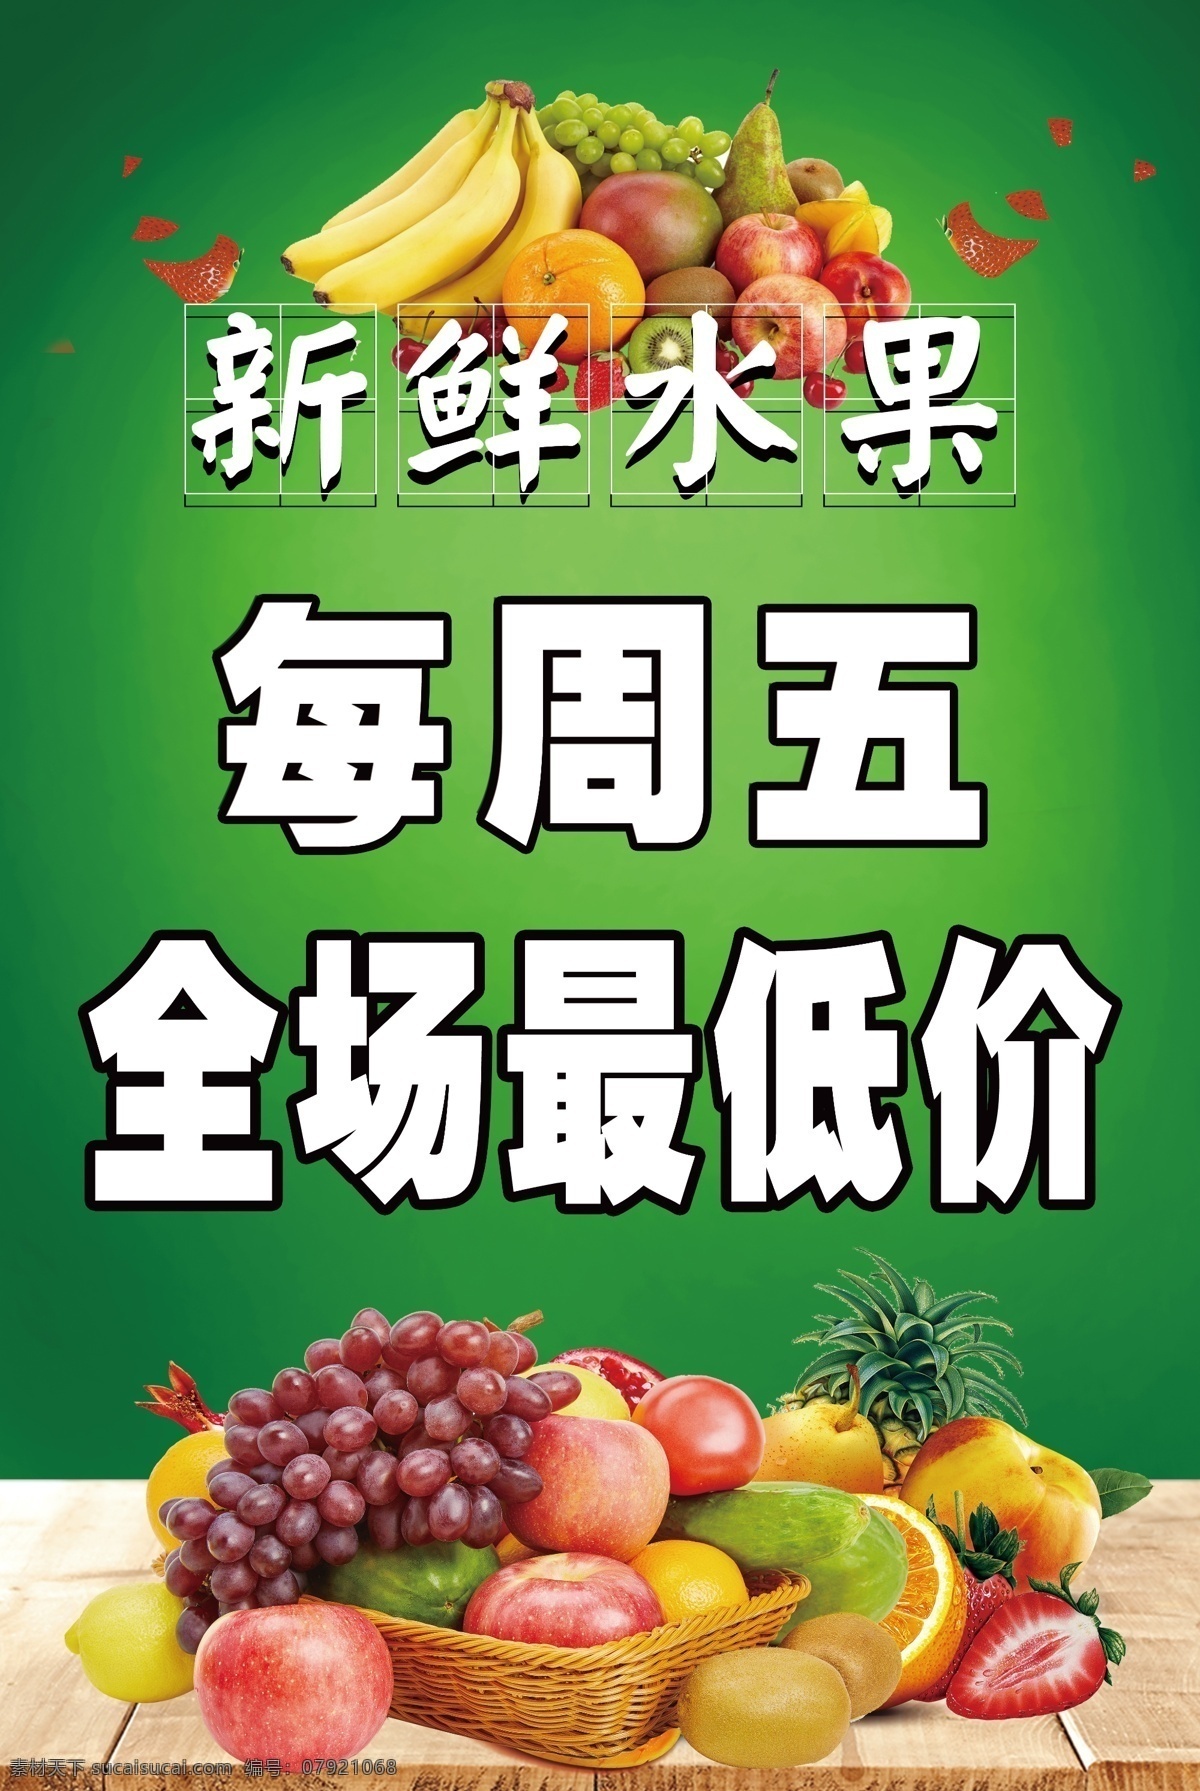 水果海报 水果 宣传彩页 全场最低 新鲜果子 水果展示 鲜鲜水果